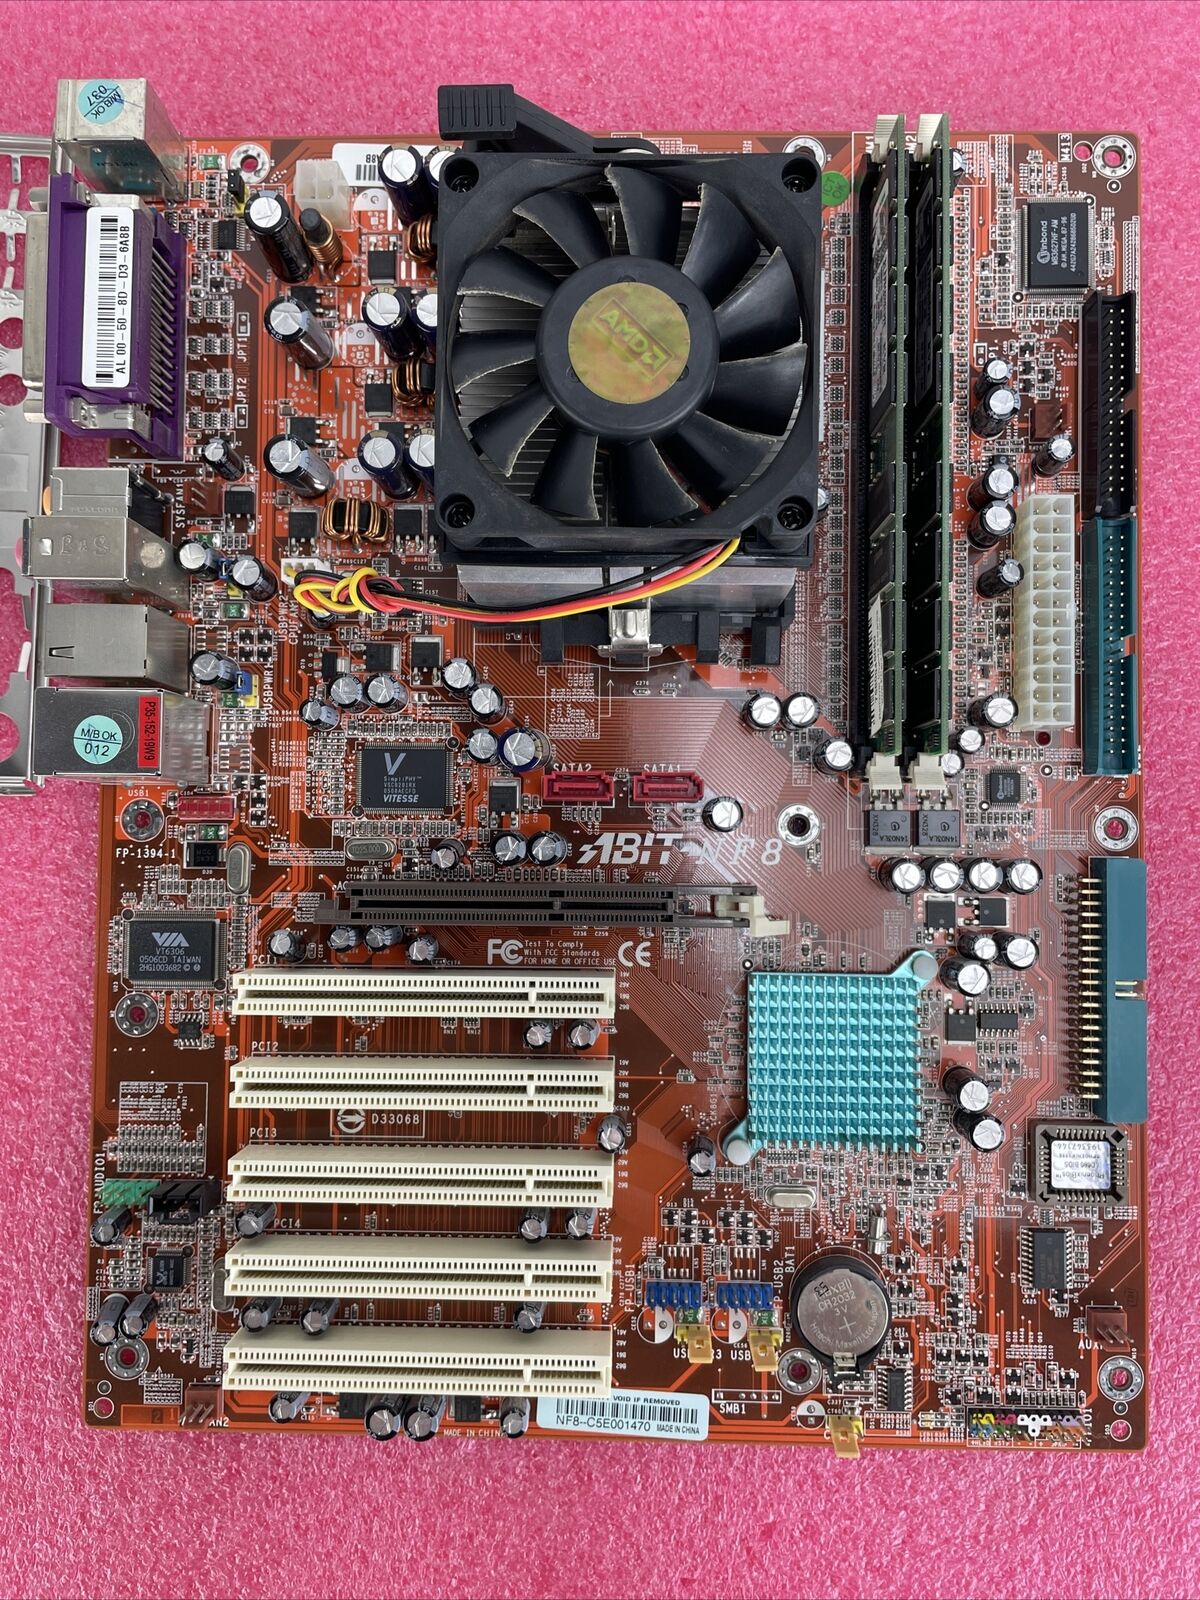 ABIT NF8 Motherboard AMD Athlon 64 2800+ 1.8GHz 1GB RAM w/Shield